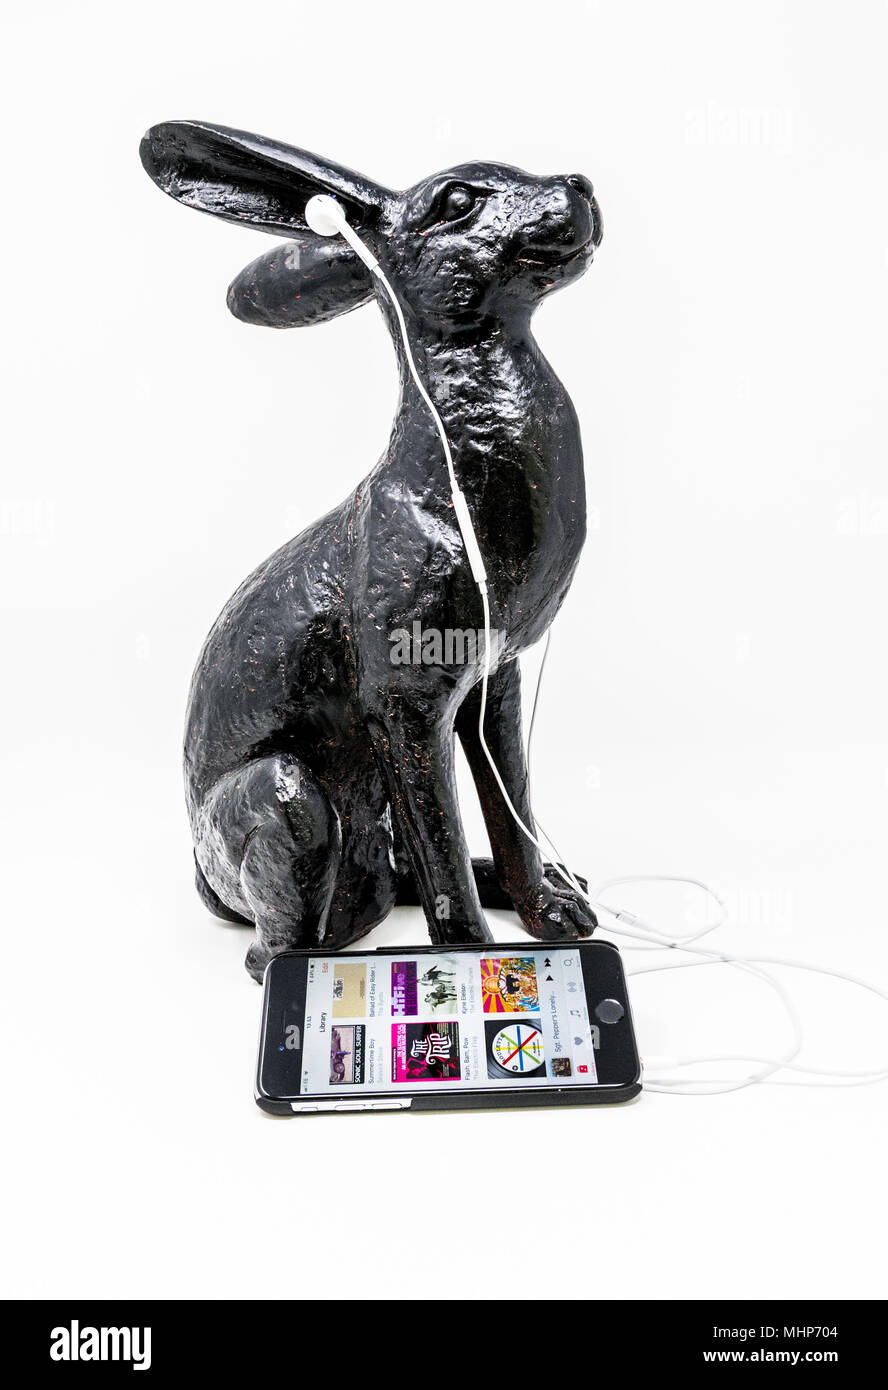 Schwarz lackiert Messing Modell einer Hase mit iphone und earpods. Stockfoto